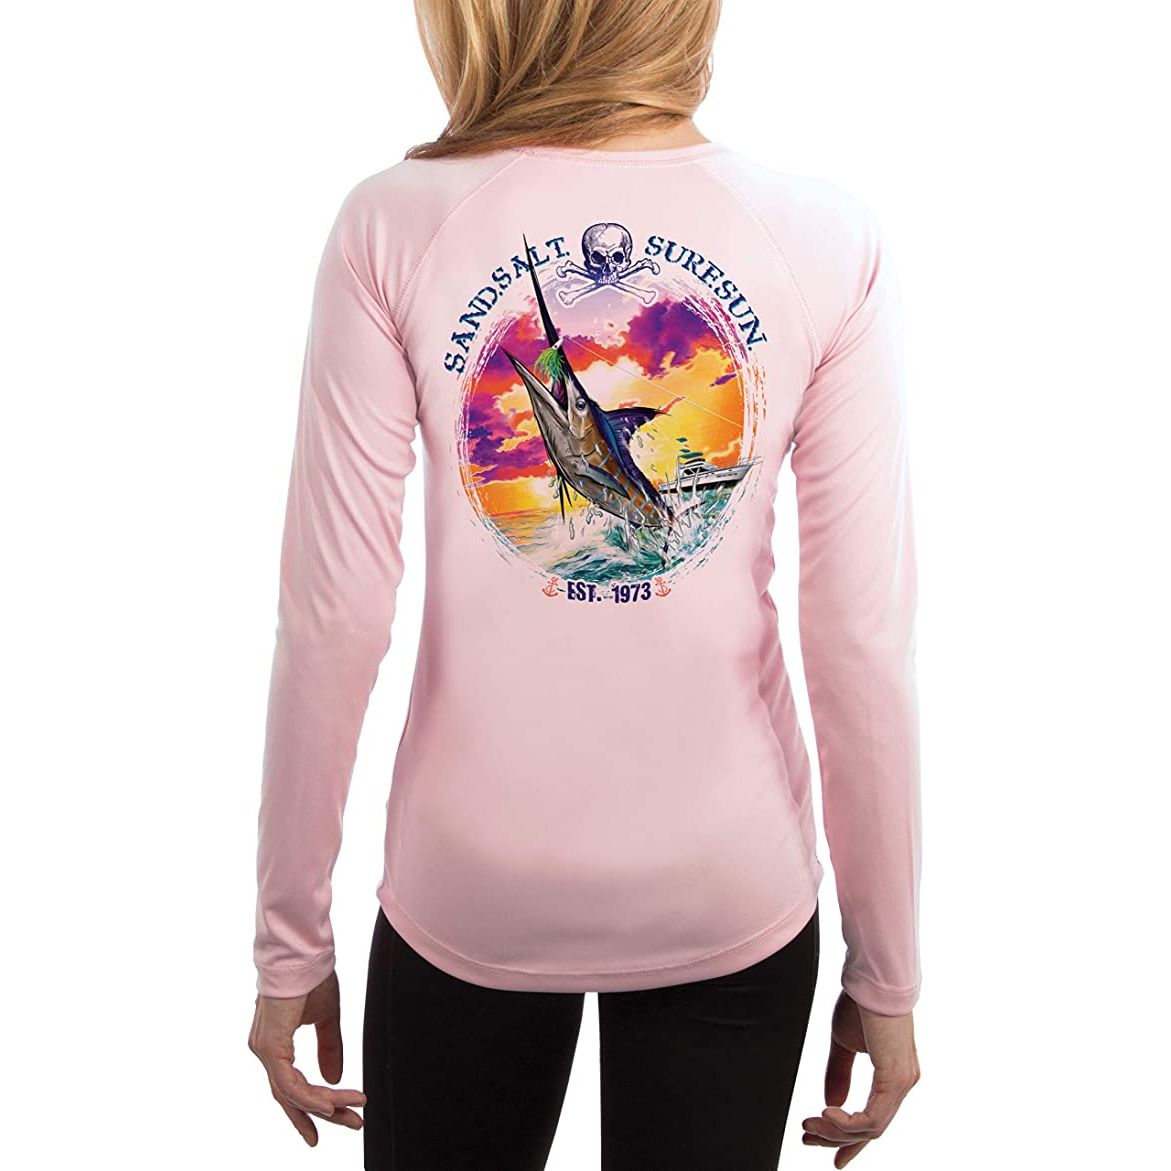 SAND.SALT.SURF.SUN. Blue Marlin Sunset Women's UPF 50+ UV Sun Protection Performance Long Sleeve T-Shirt Small / Light Pink